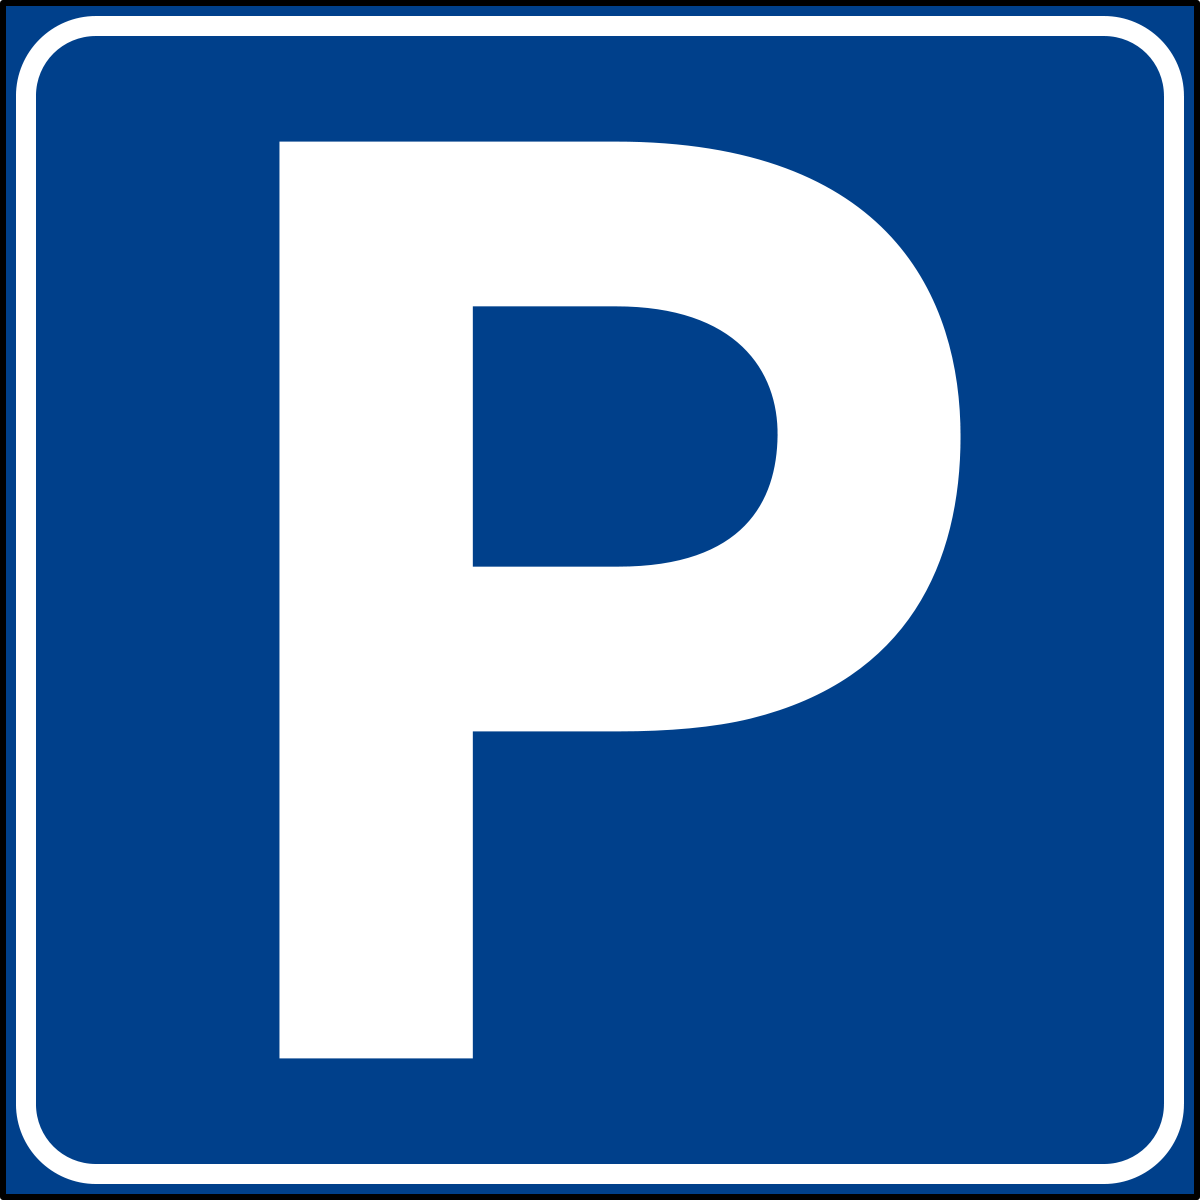 File:Italian traffic signs - parcheggio.svg - Wikipedia